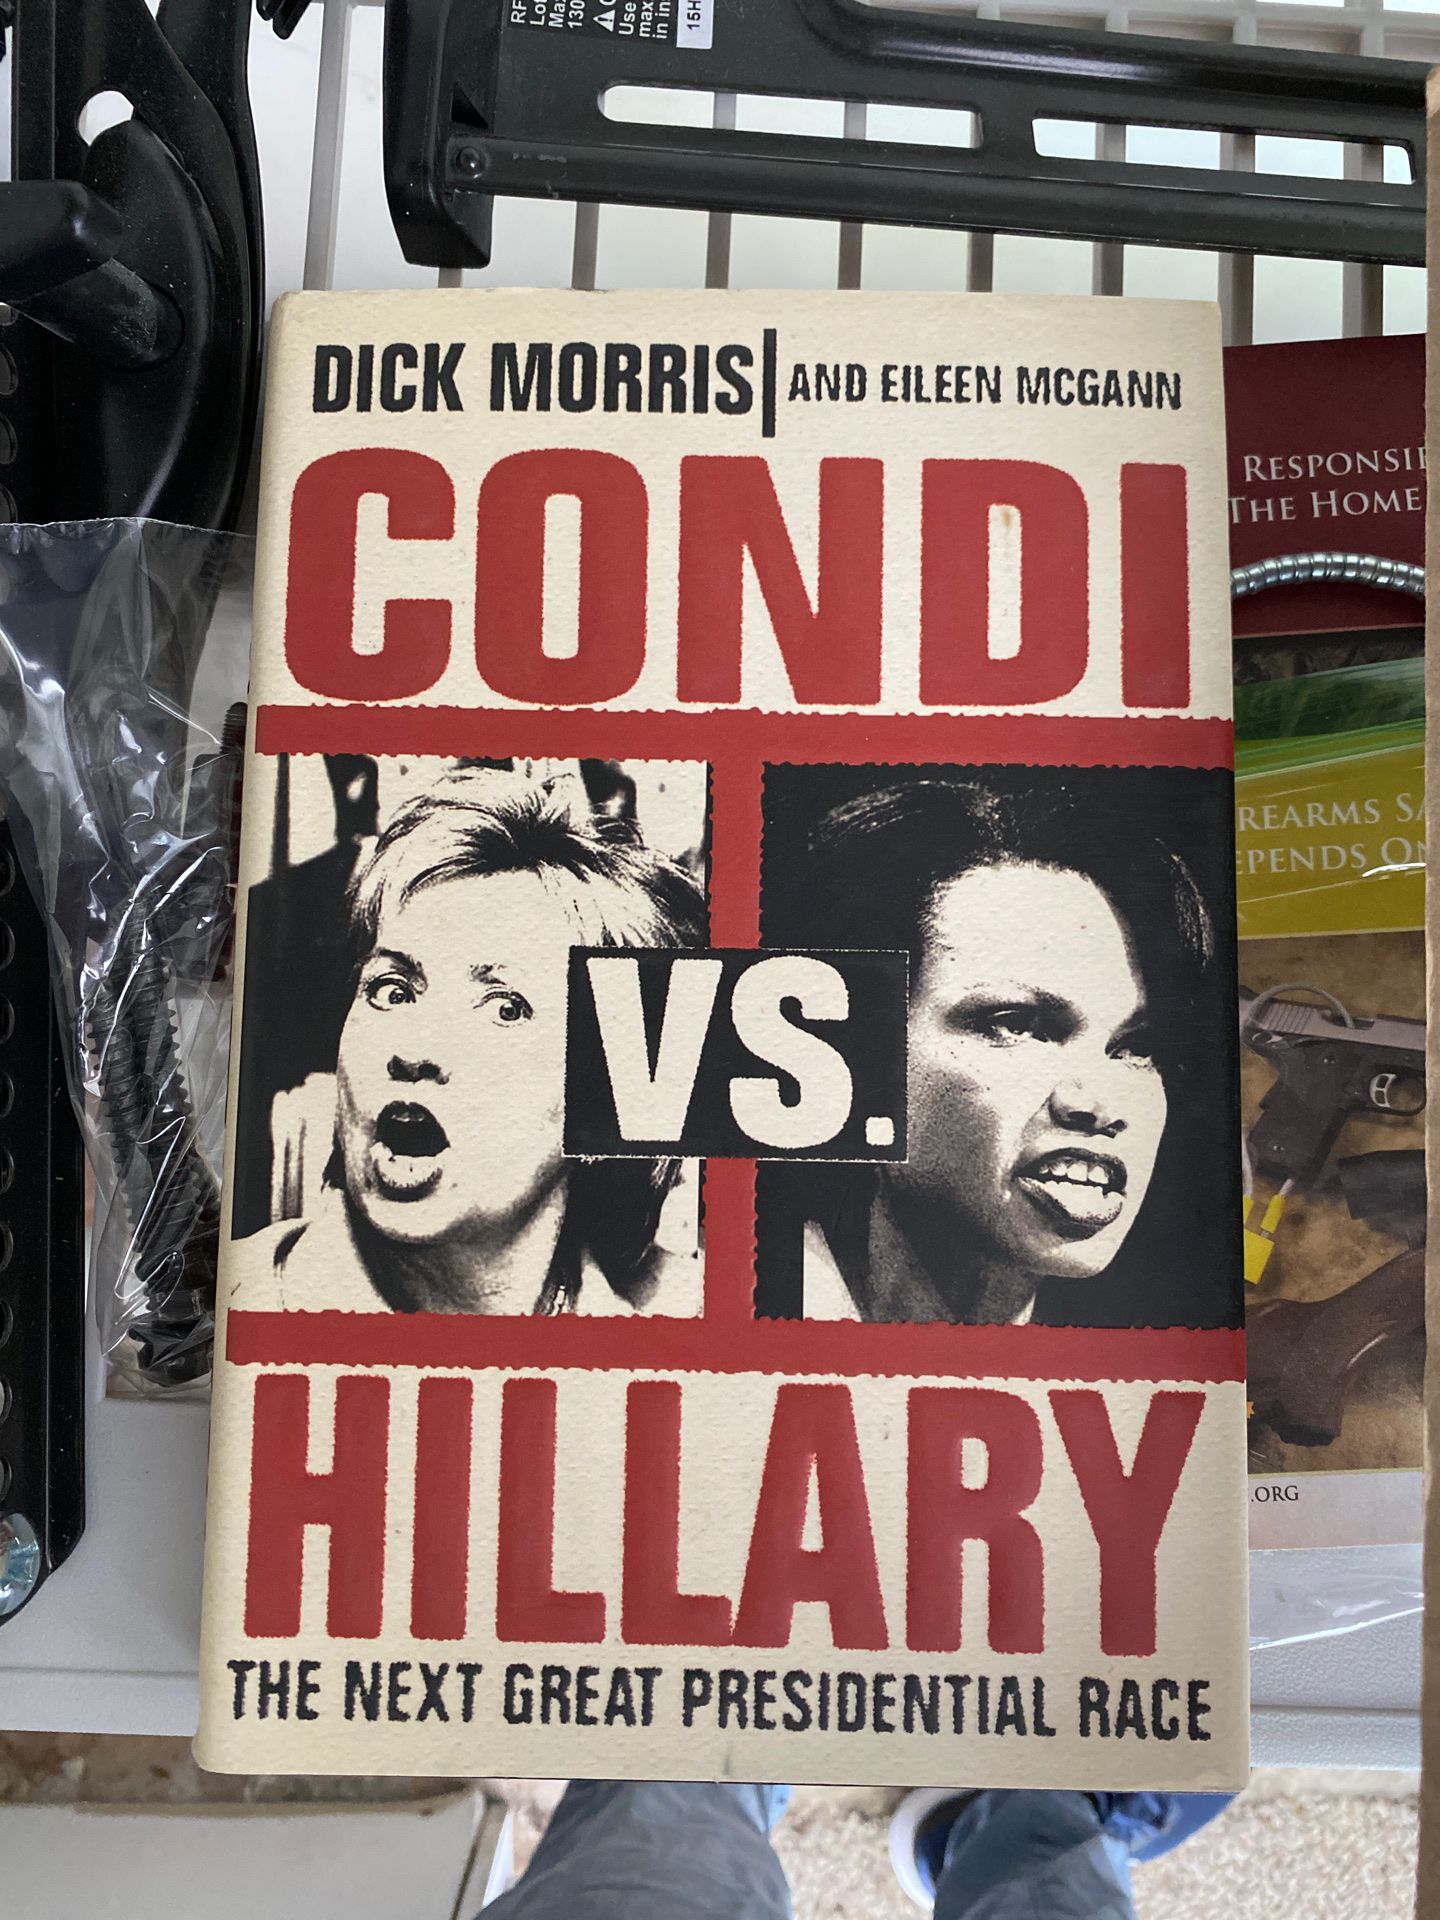 Condi versus Hillary